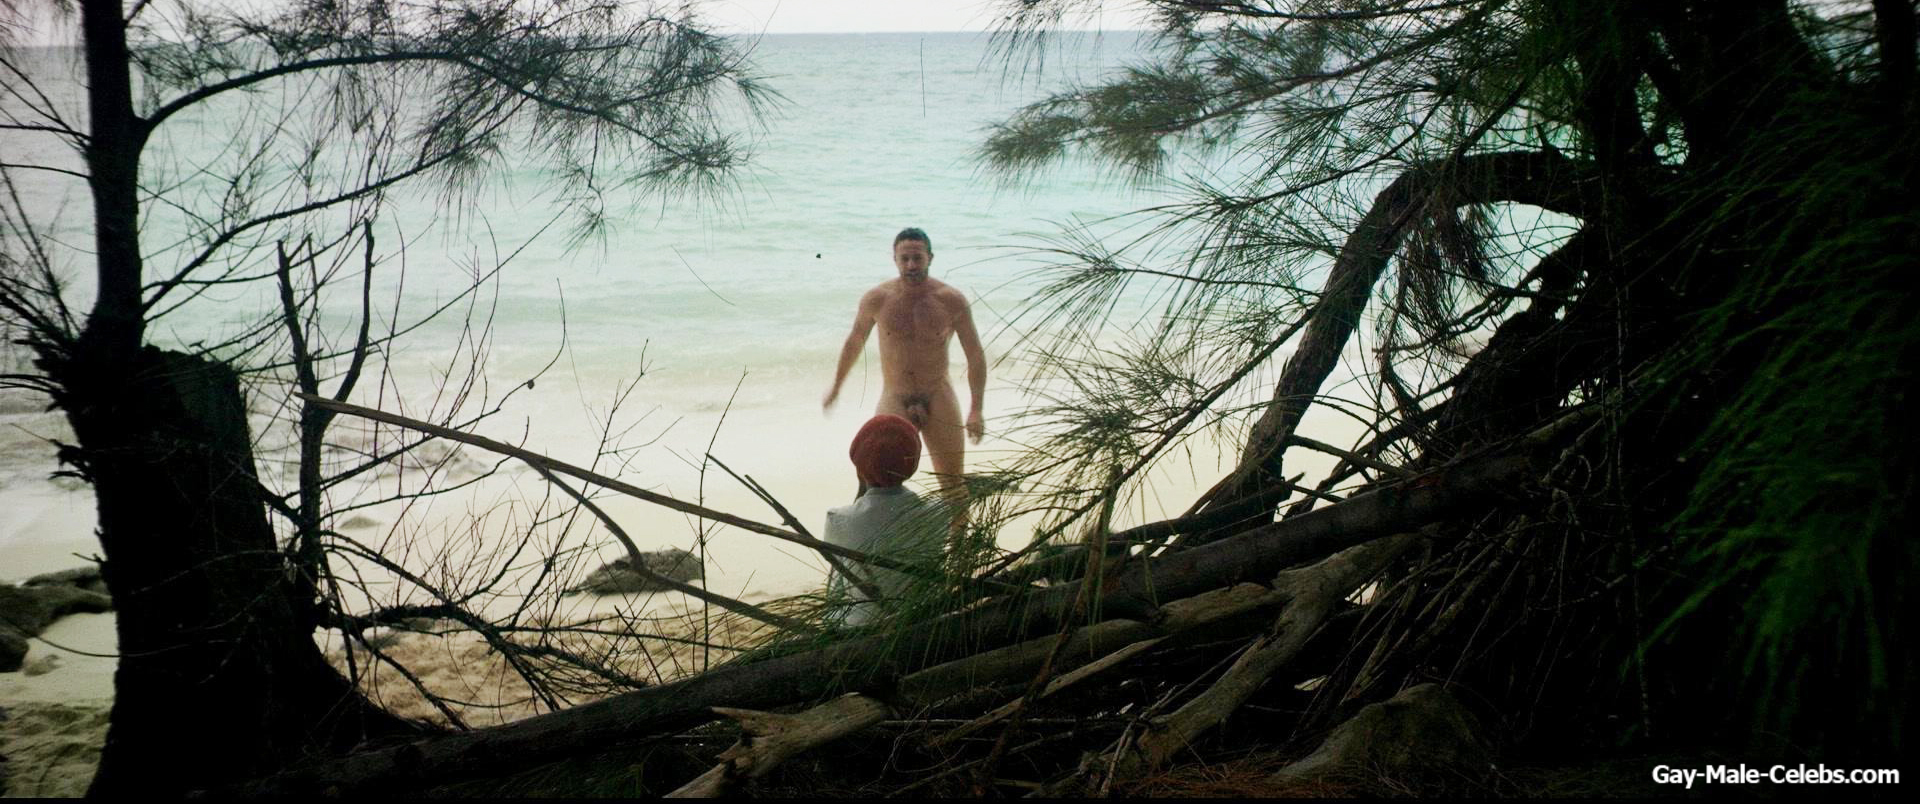 Warren Brown Frontal Nude Beach Scenes In Cargo